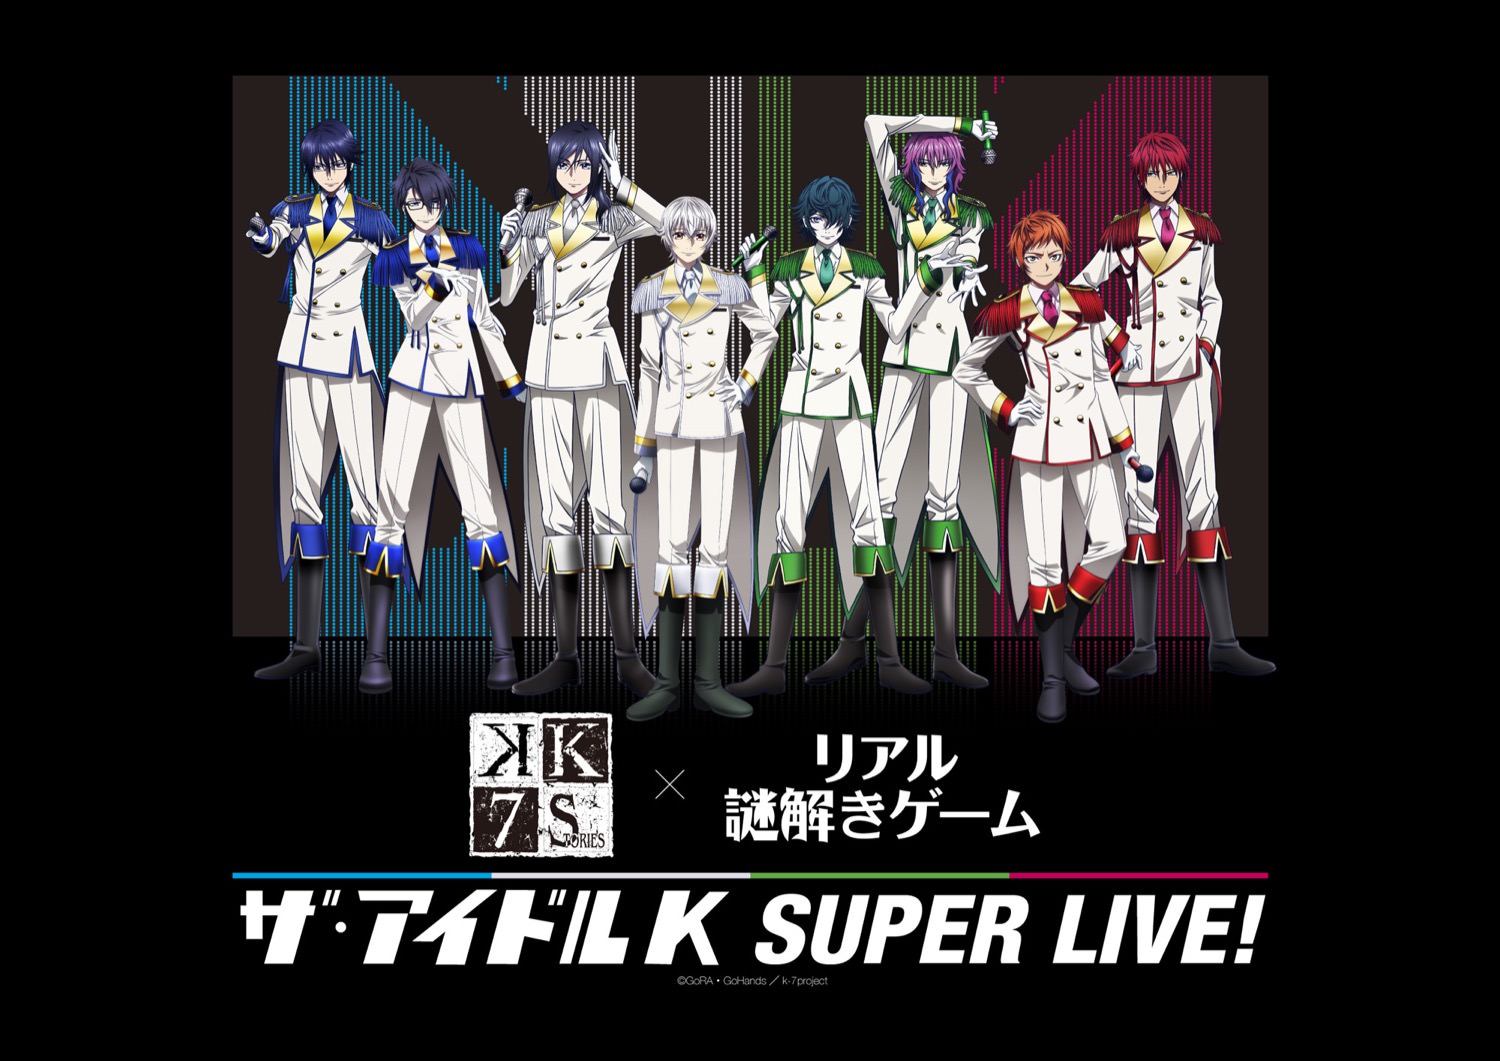 K × なぞともカフェ渋谷 12.14から「ザ・アイドル K SUPER LIVE!」開催!